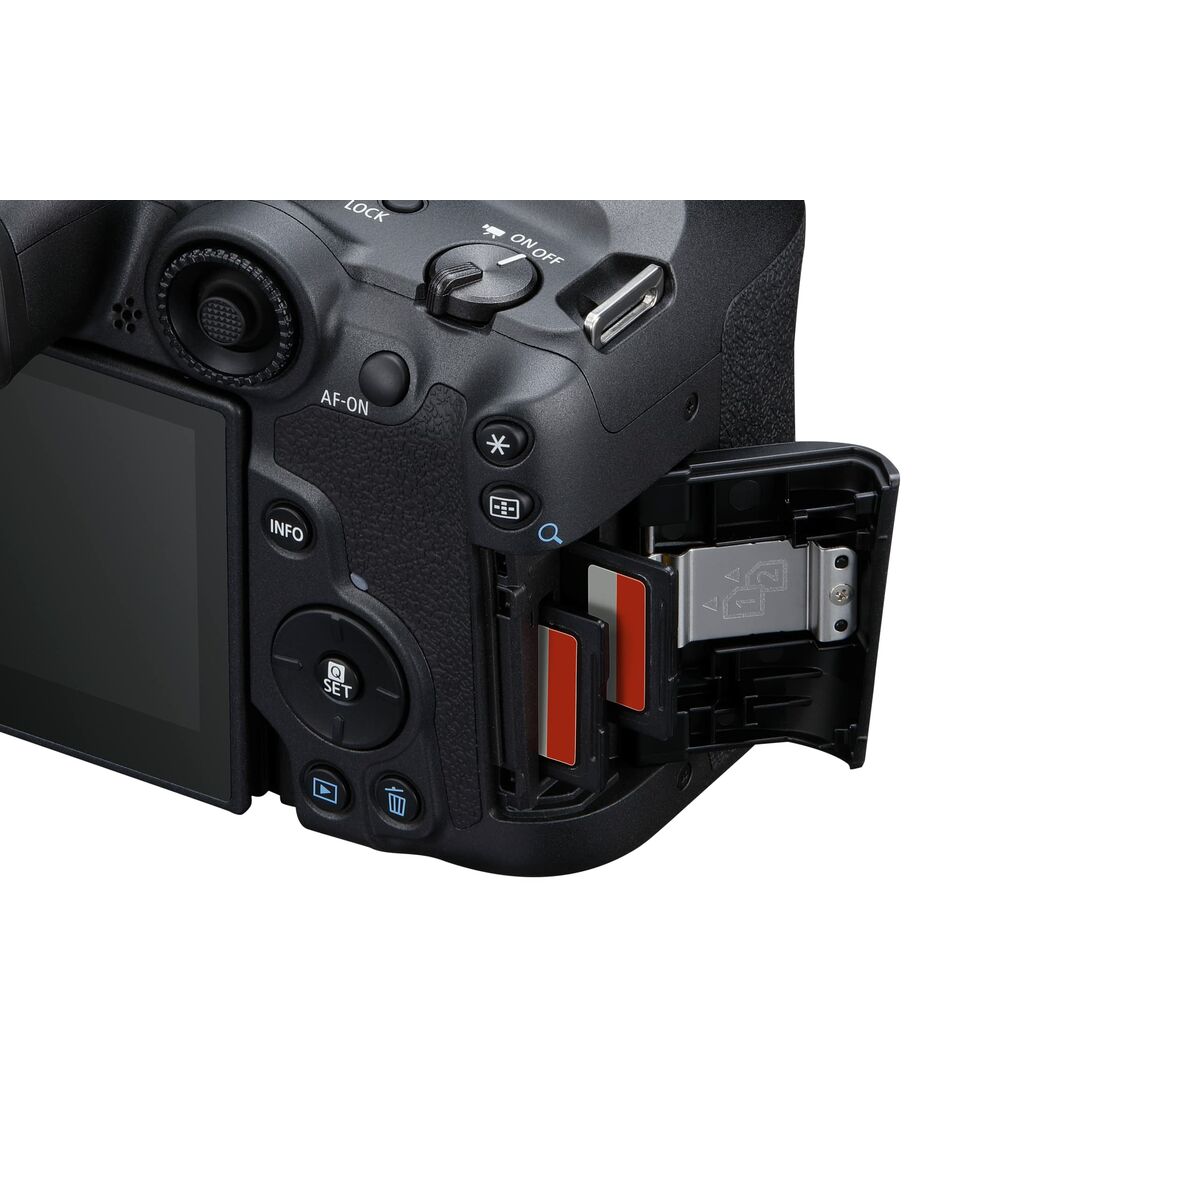 Kamera Reflex Canon EOS R7